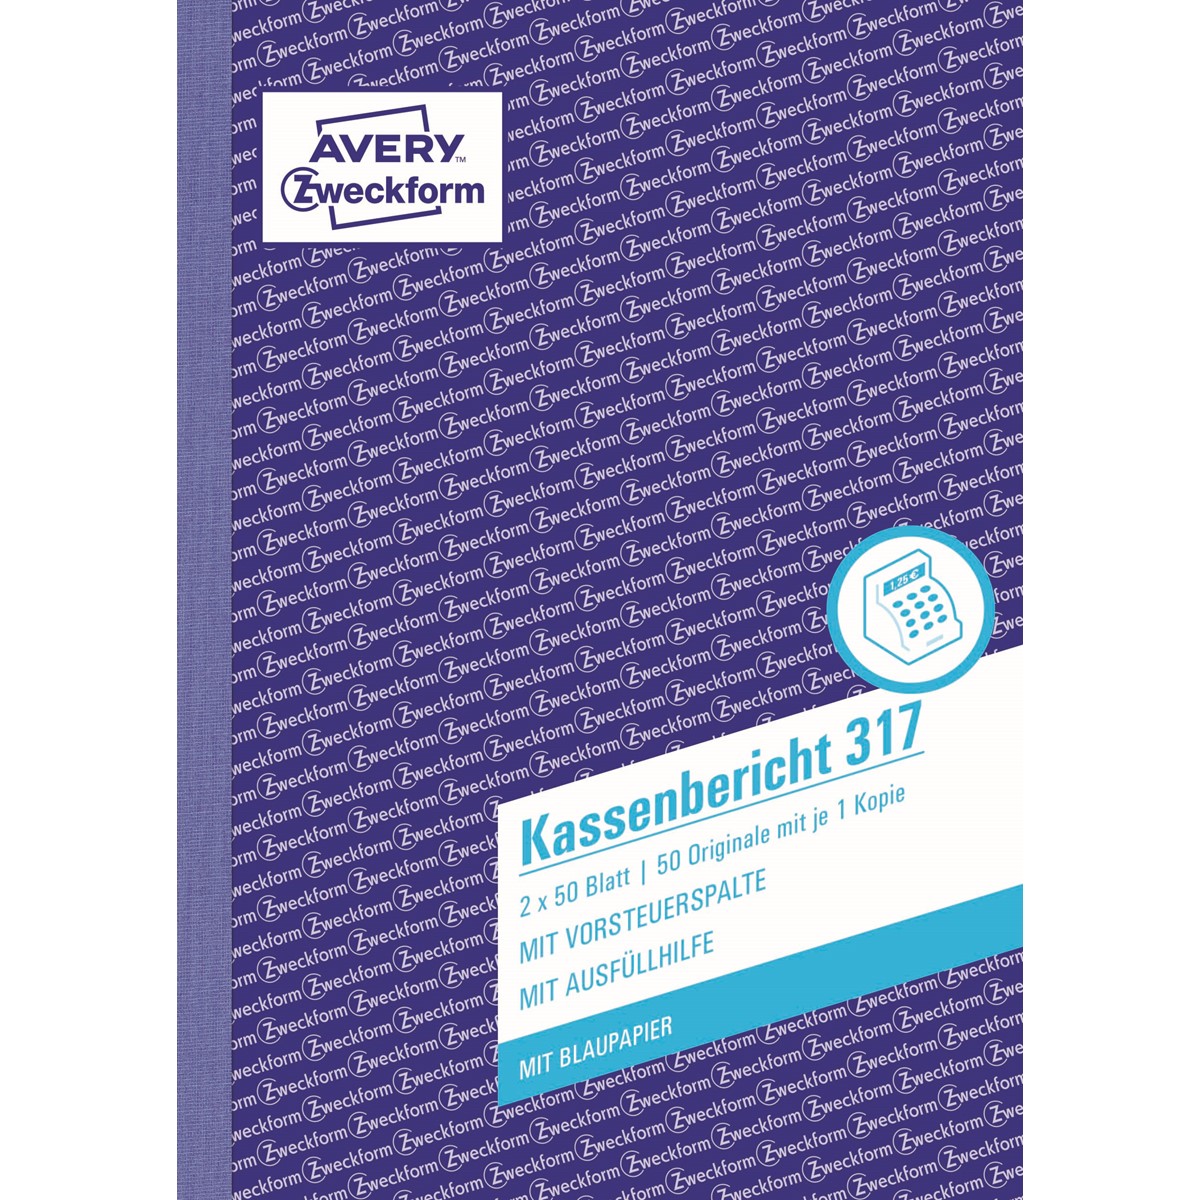 Avery Zweckform 317 Kassenbericht A5 2x50 Blatt Kassenbuch Formular Buch NEU 